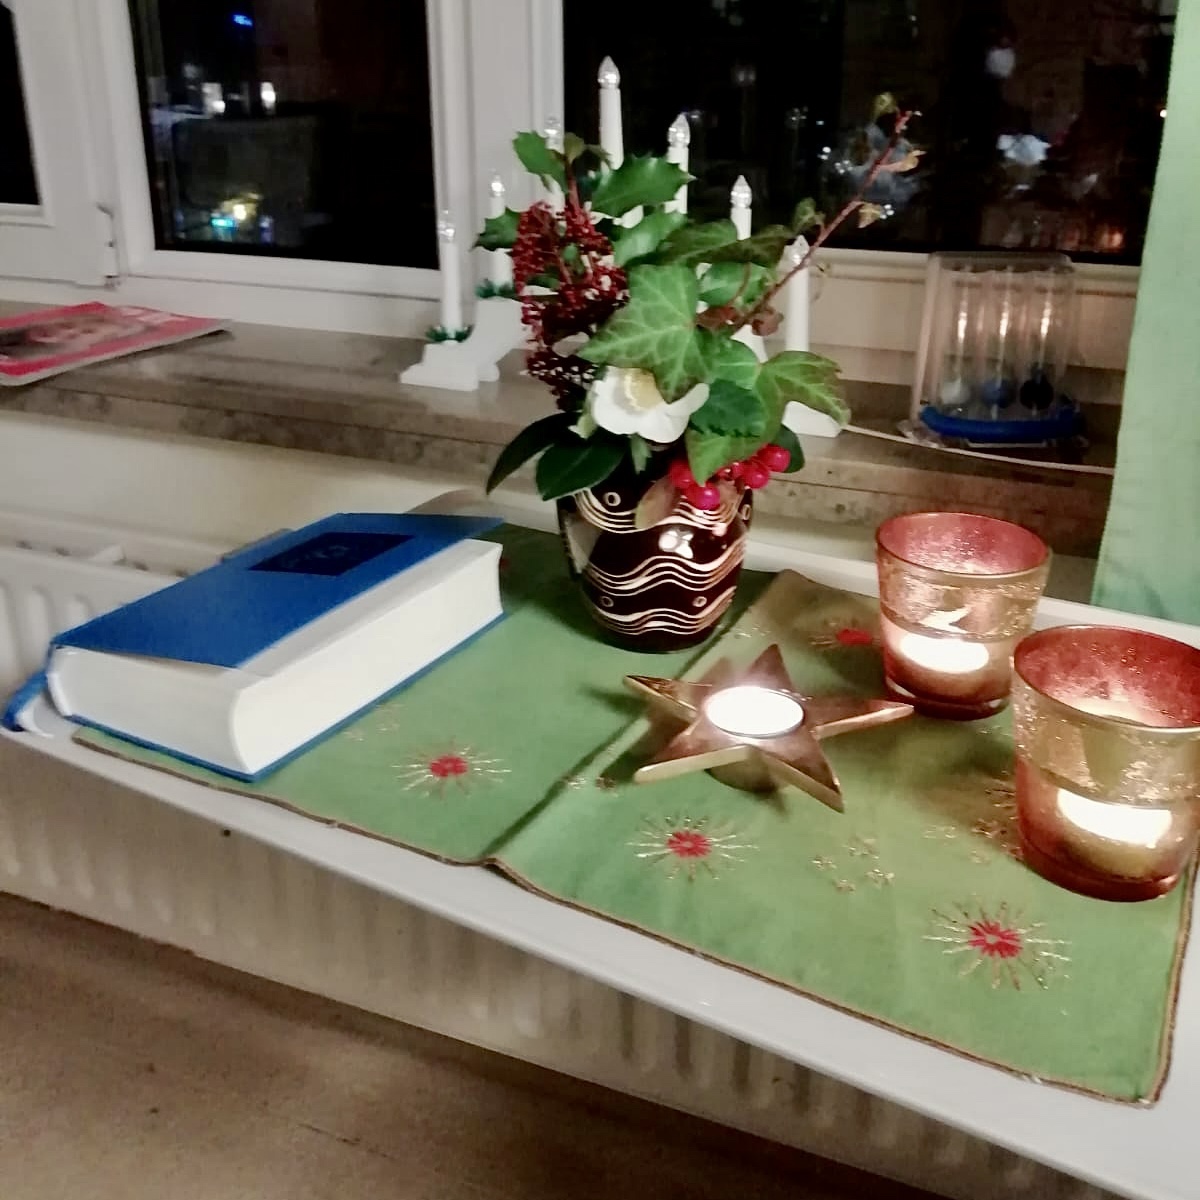 Kerzen, Blumen, Gesangbuch auf Weihnachtsdecke auf dem Nachttisch